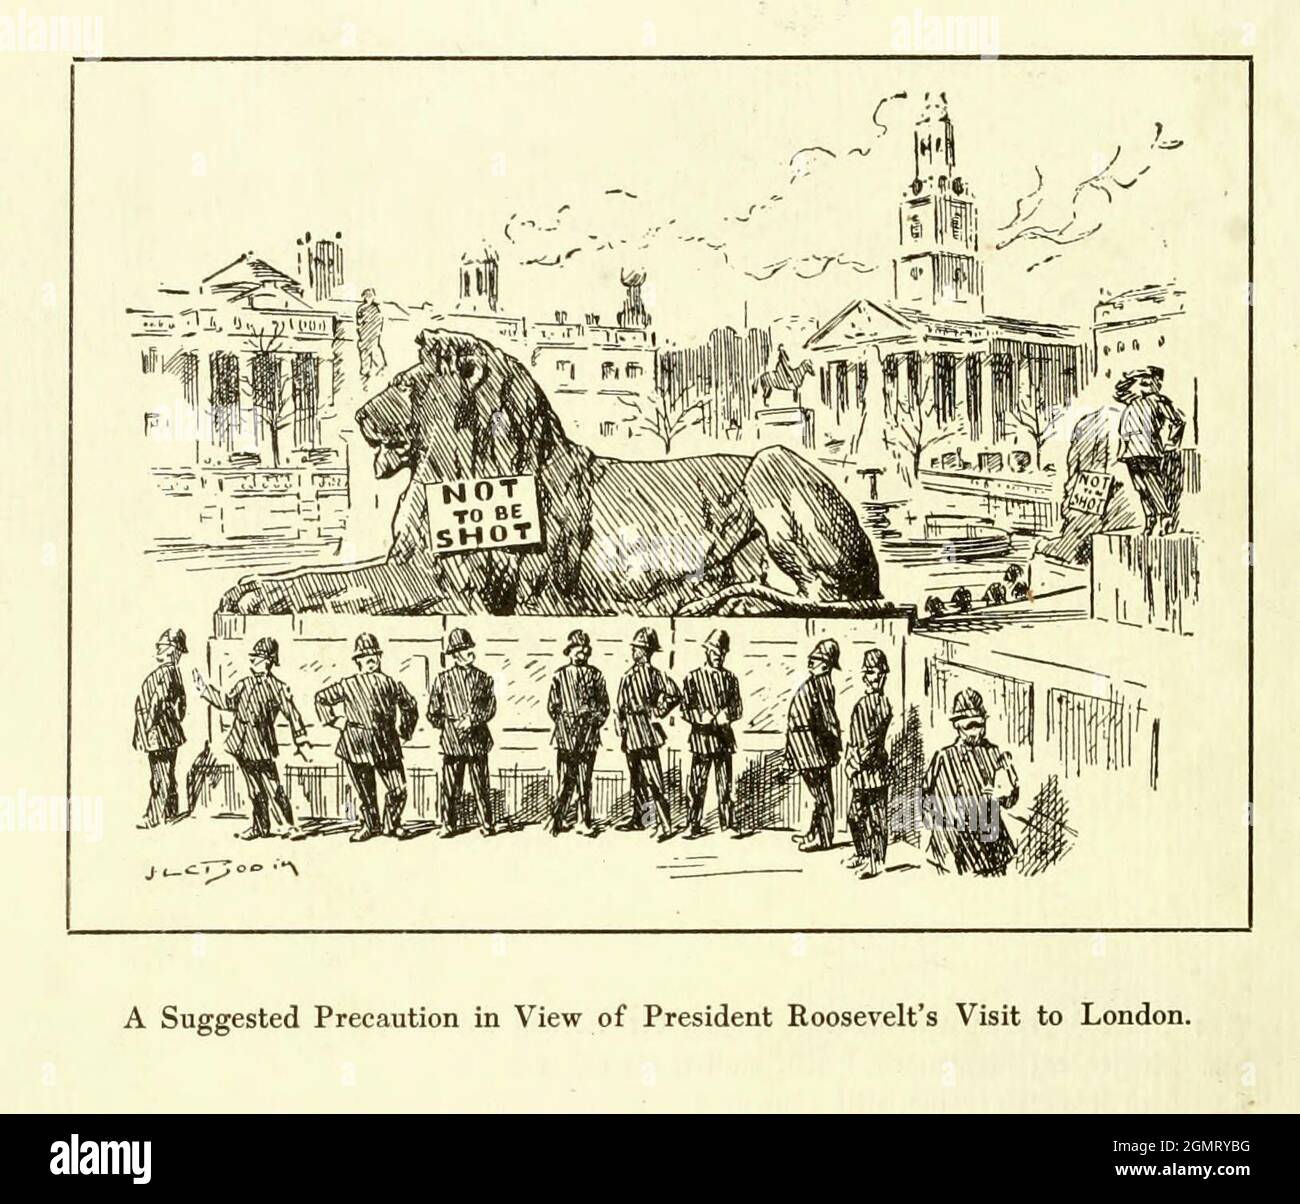 Schießen Sie nicht auf Trafalgar Square Lion - Eine empfohlene Vorsichtsmaßnahme angesichts des Besuchs von Präsident Roosevelt in London Stockfoto